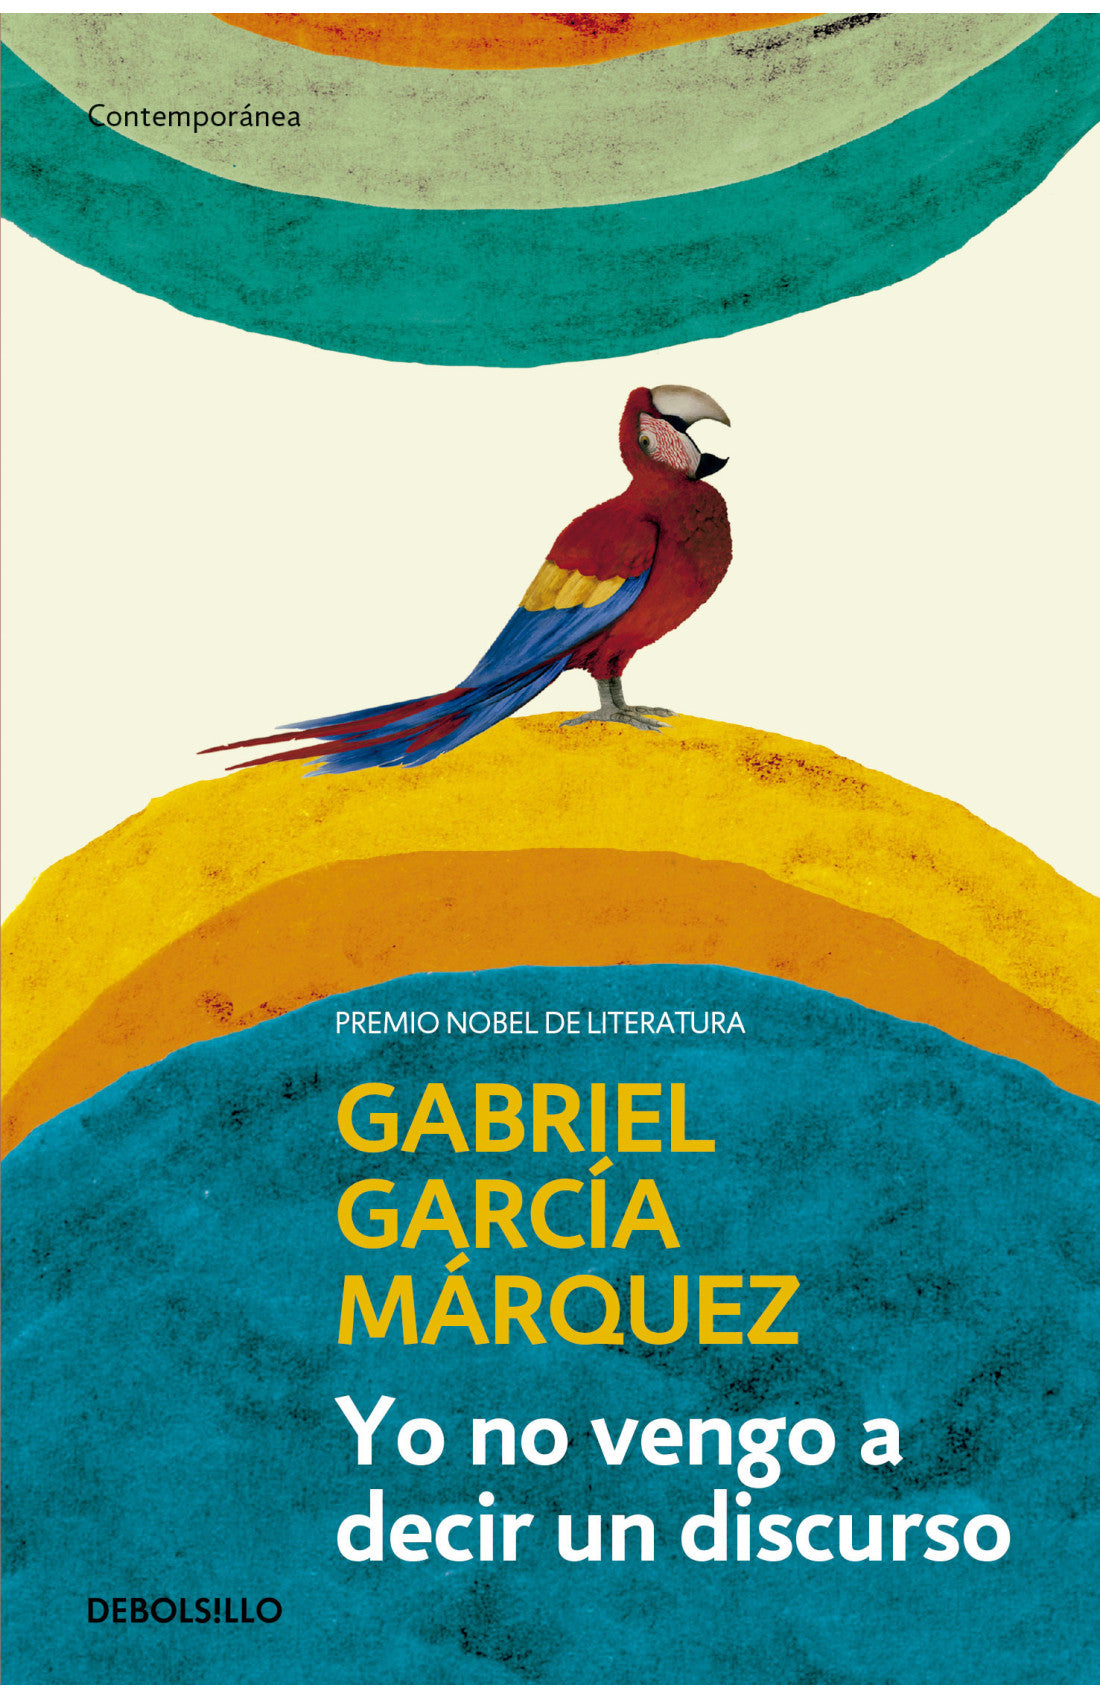 Libro Gabriel García Márquez - Yo no vengo a decir un discurso